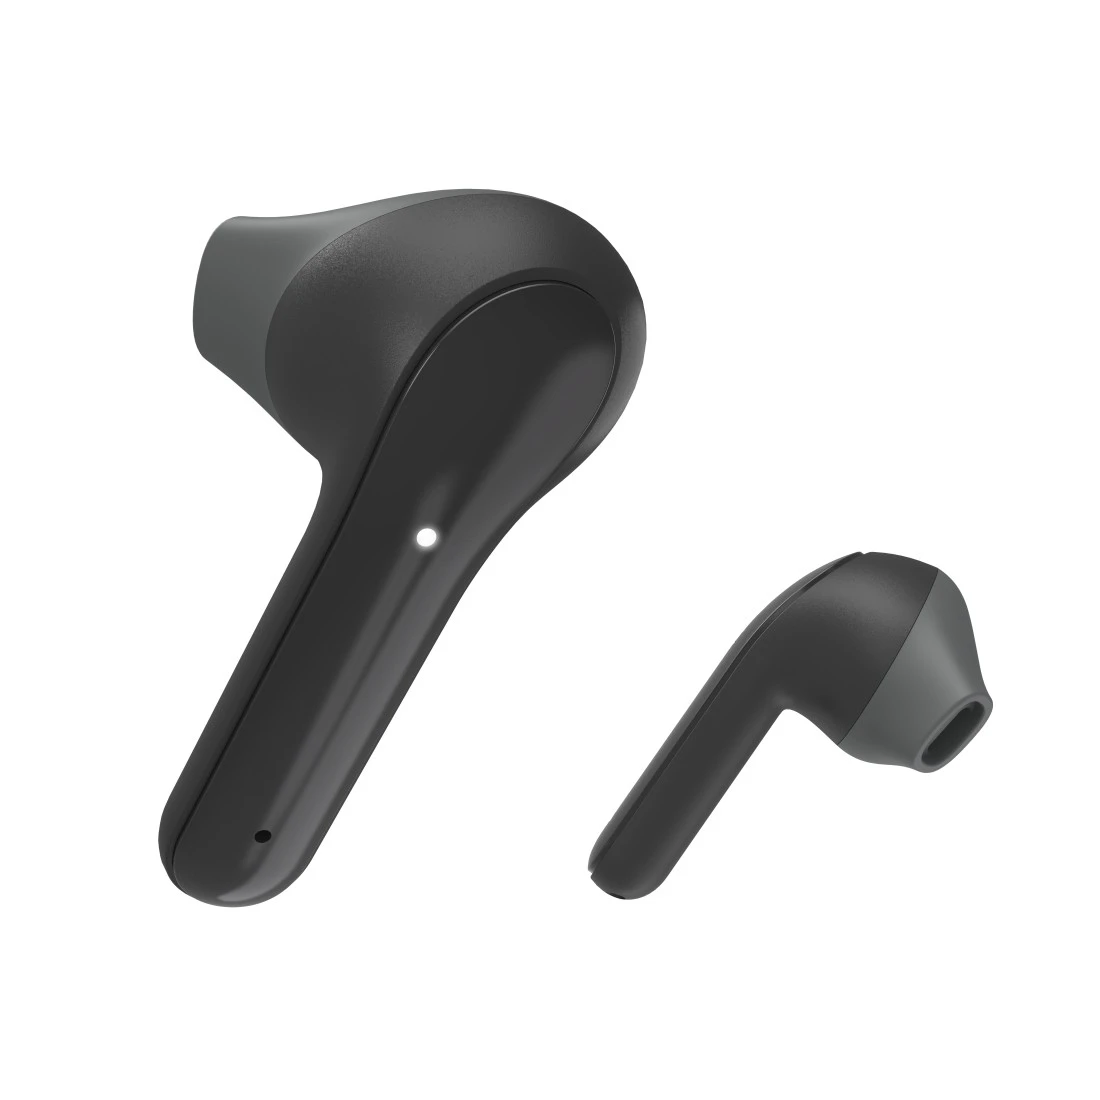 Hama, Auriculares inalámbricos Bluetooth Tipo Diadema (Auriculares  bluetooth con 36h de música, diadema acolchada, plegables, control volumen)  Negro